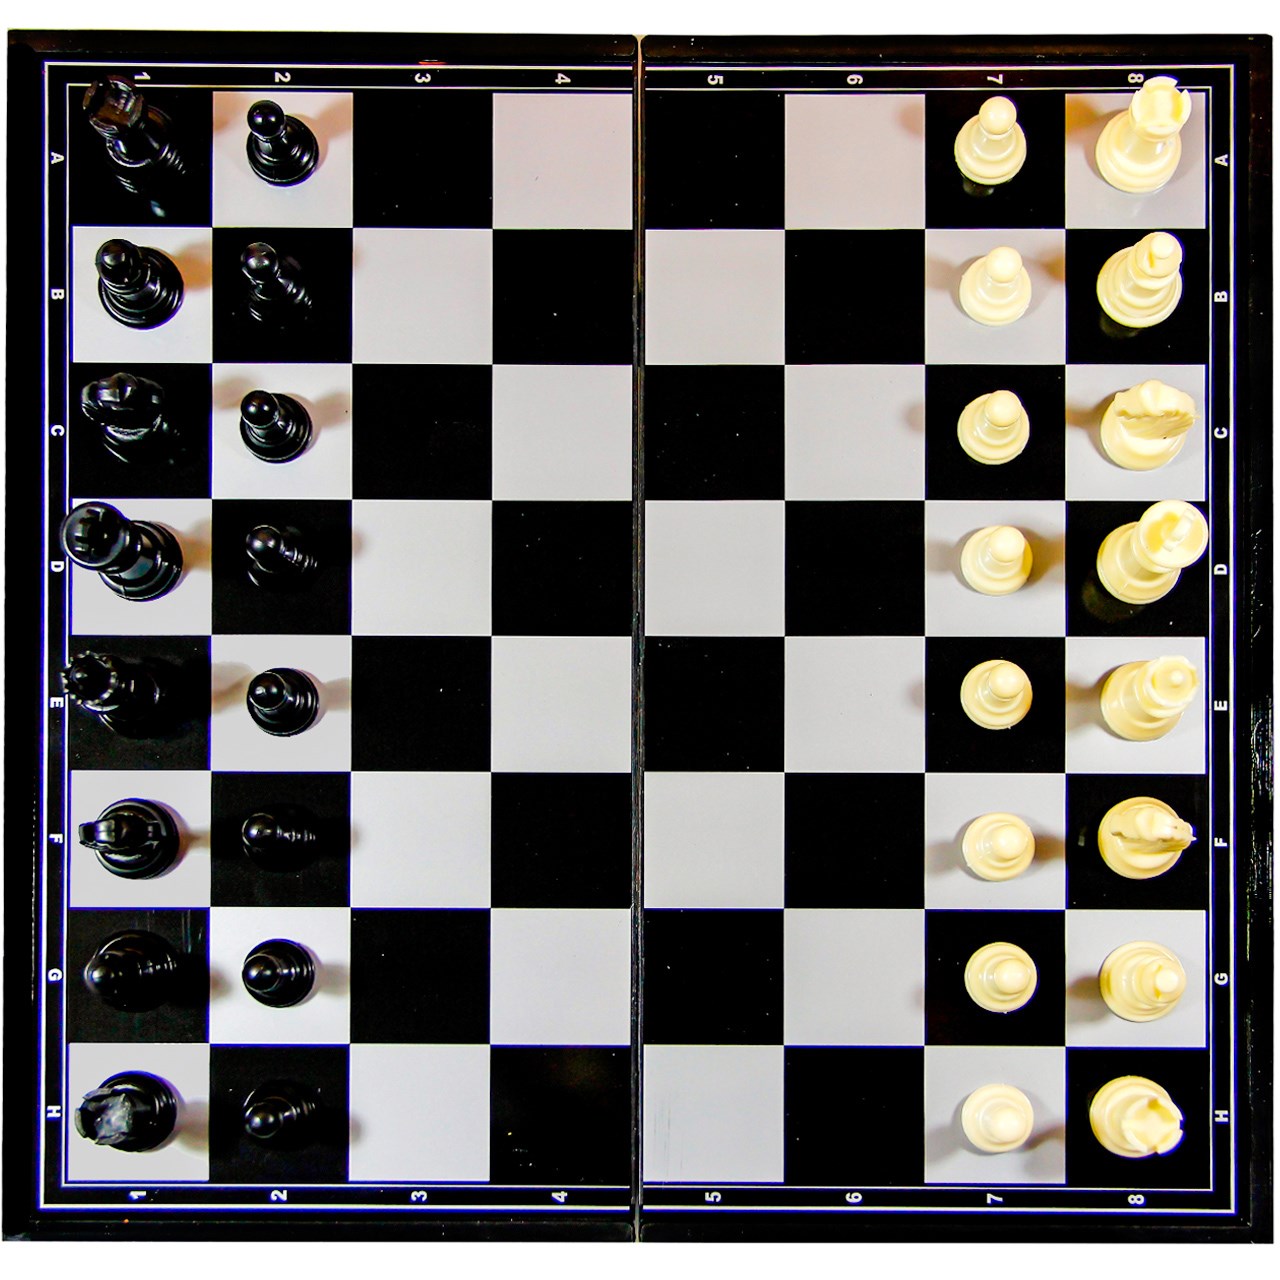 شطرنج آهنربایی های کلس چس ست مدل 3324M